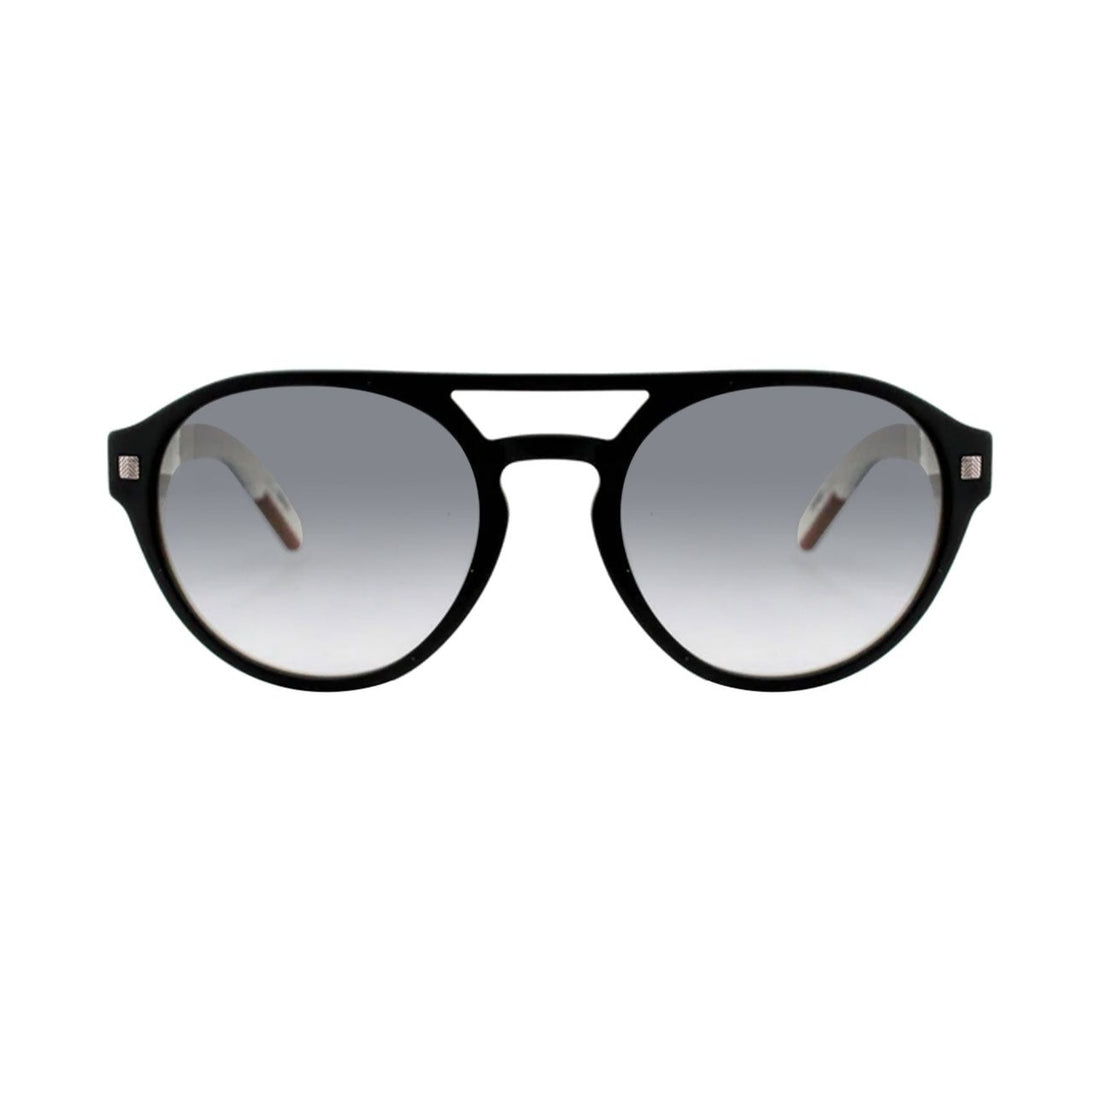 Ermenegildo Zegna occhiali da sole | Modello EZ 0134 - Nero/Bianco